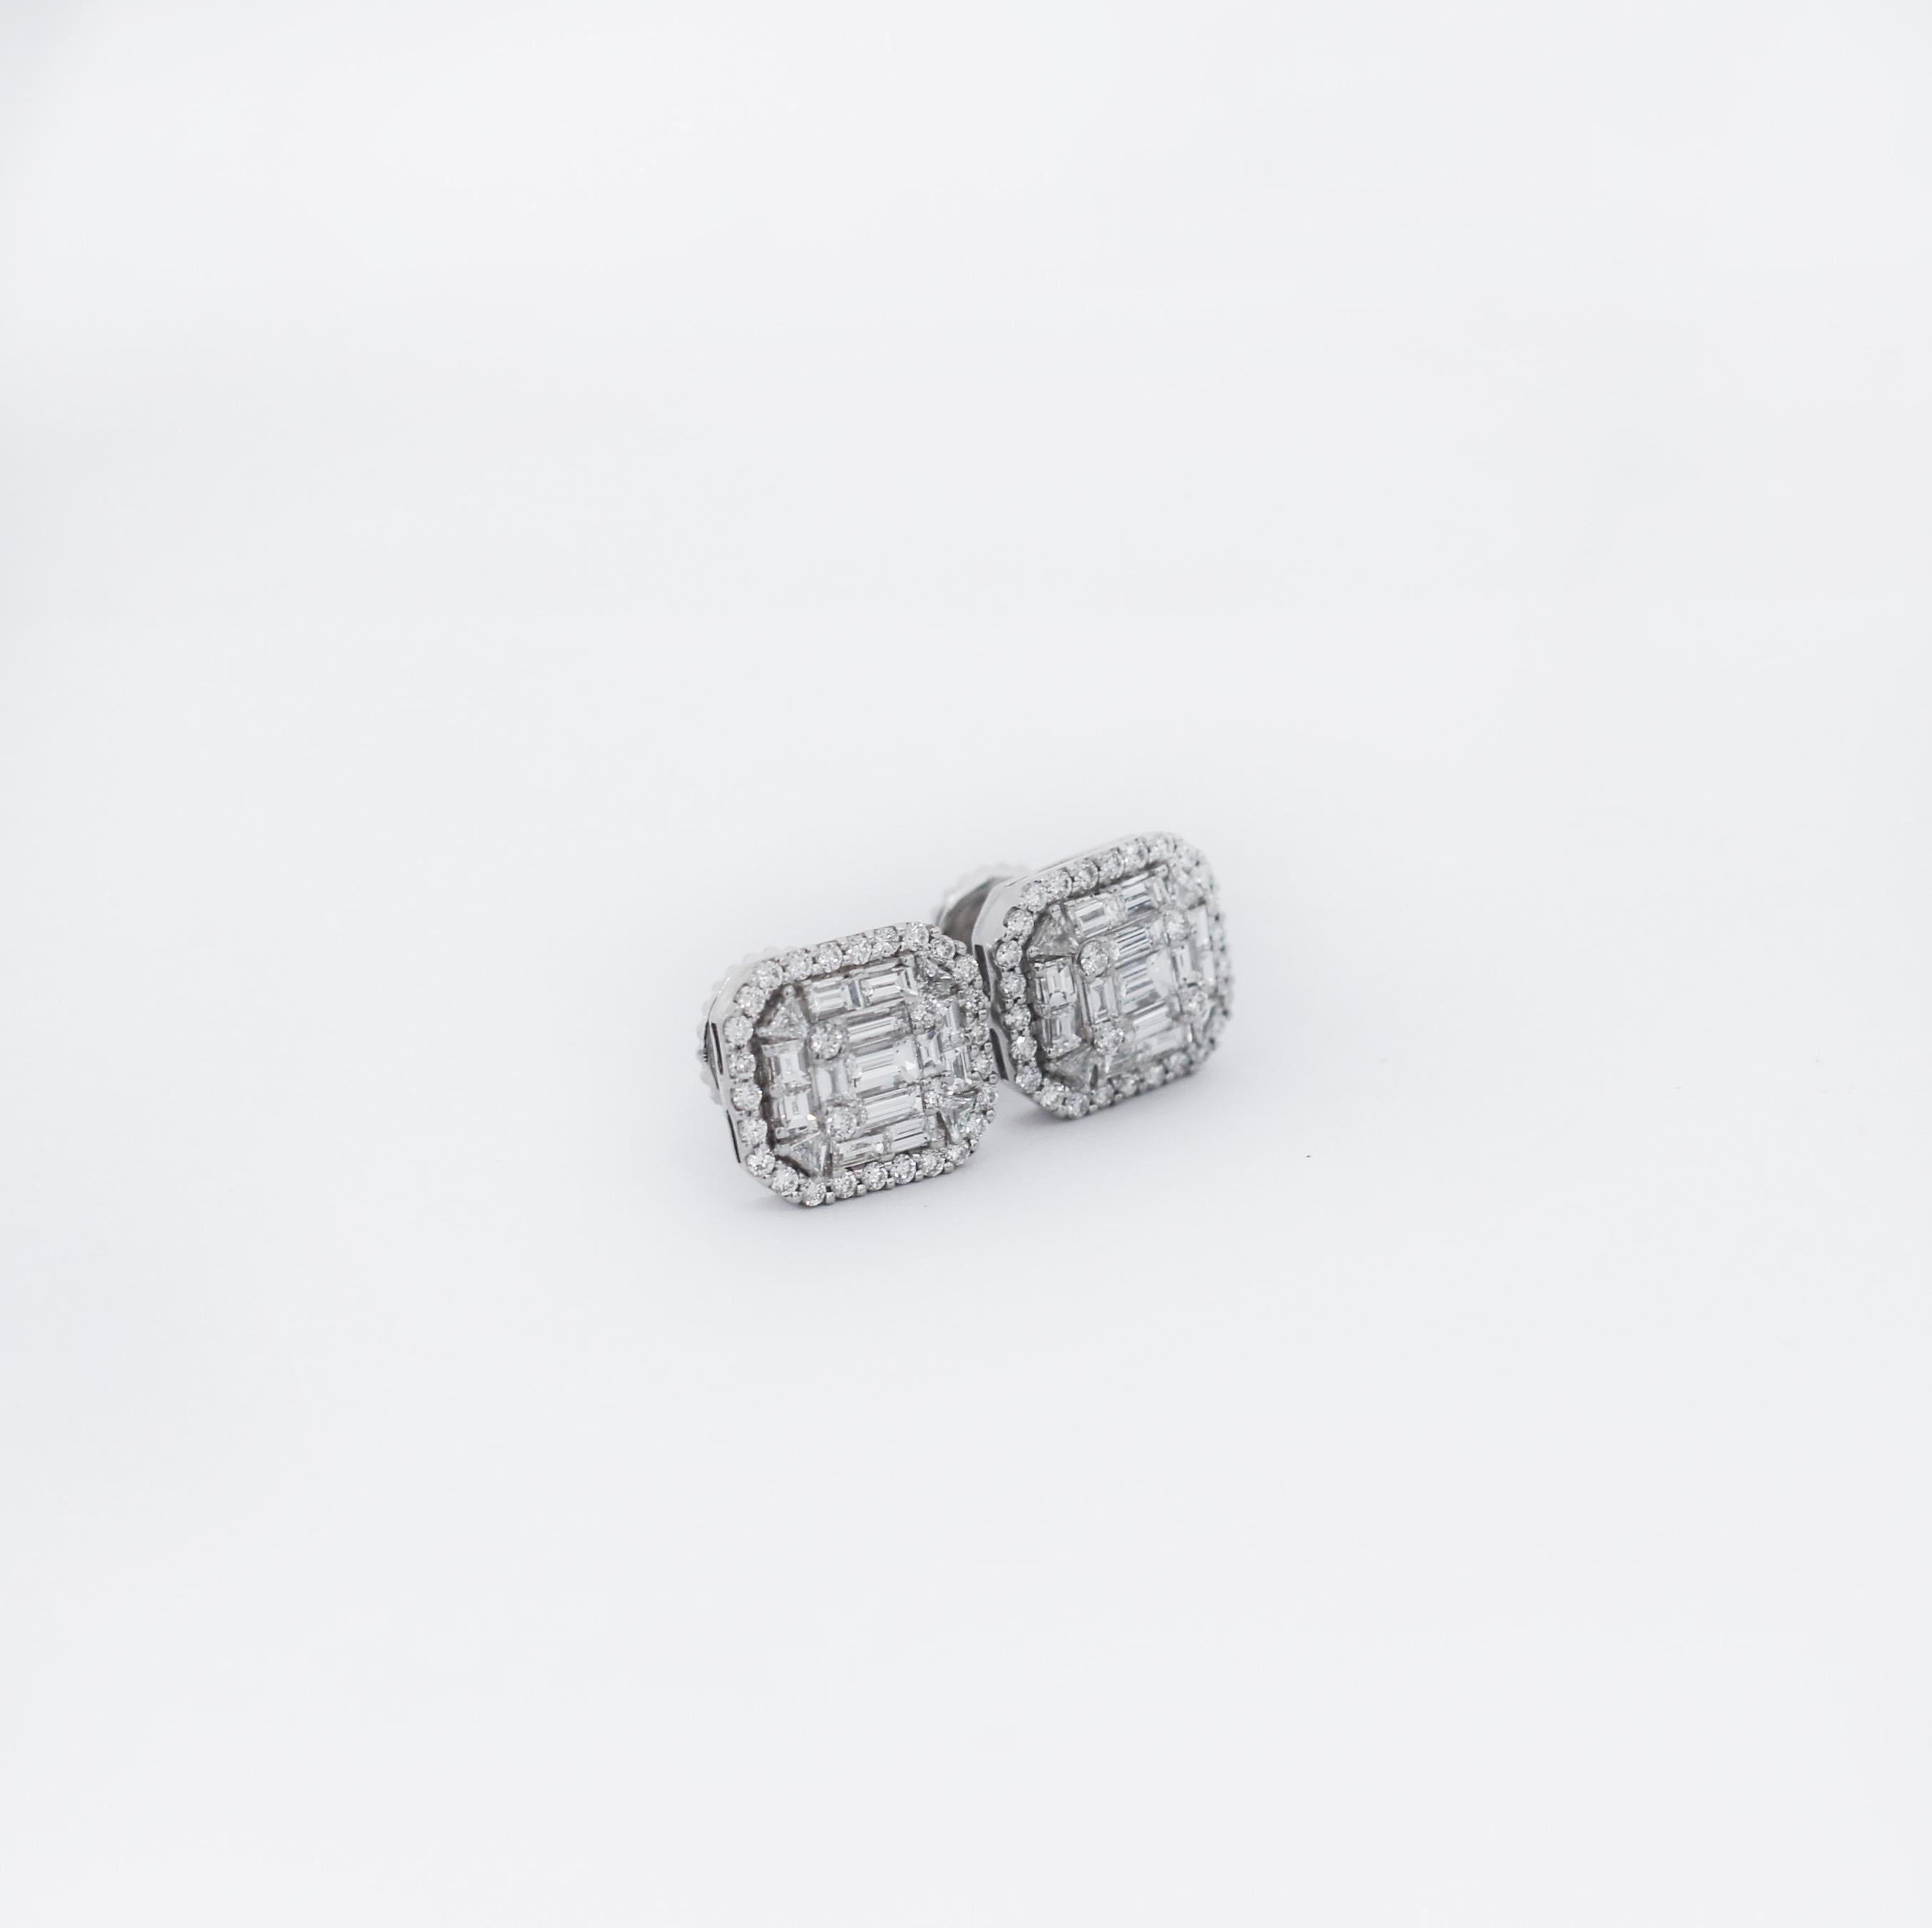 Schöne klassische Ohrringe
18K Weißgold
Diamant-Cluster
schön gestaltet
Rund- und Baguetteschnitt 
Ungefähre Maße: .50